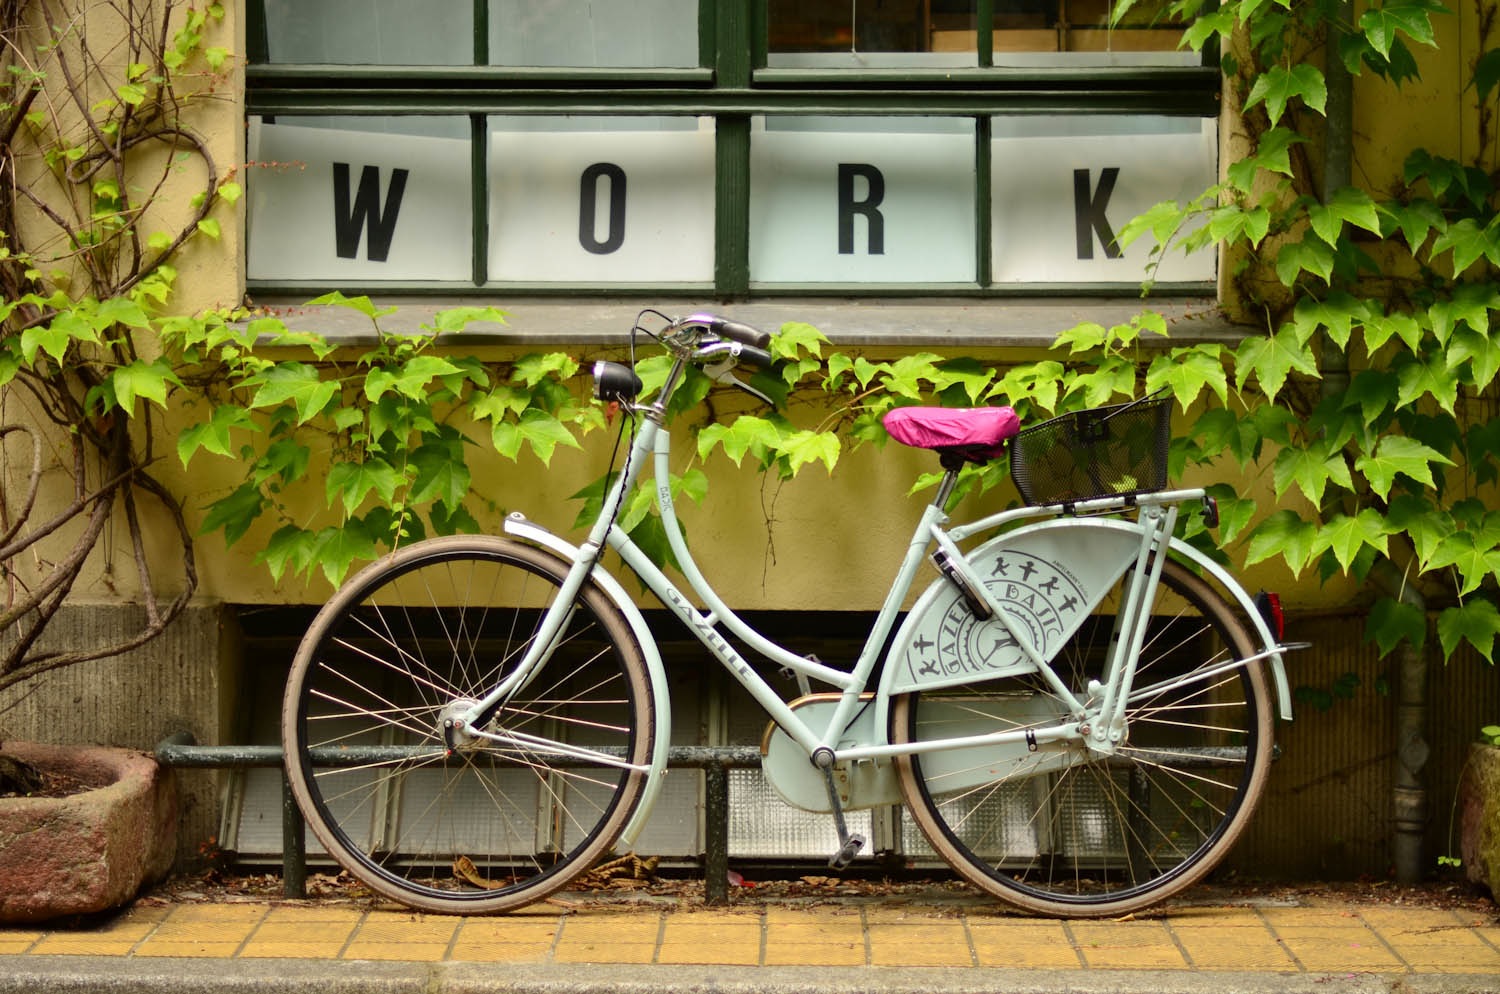 Bike to work week